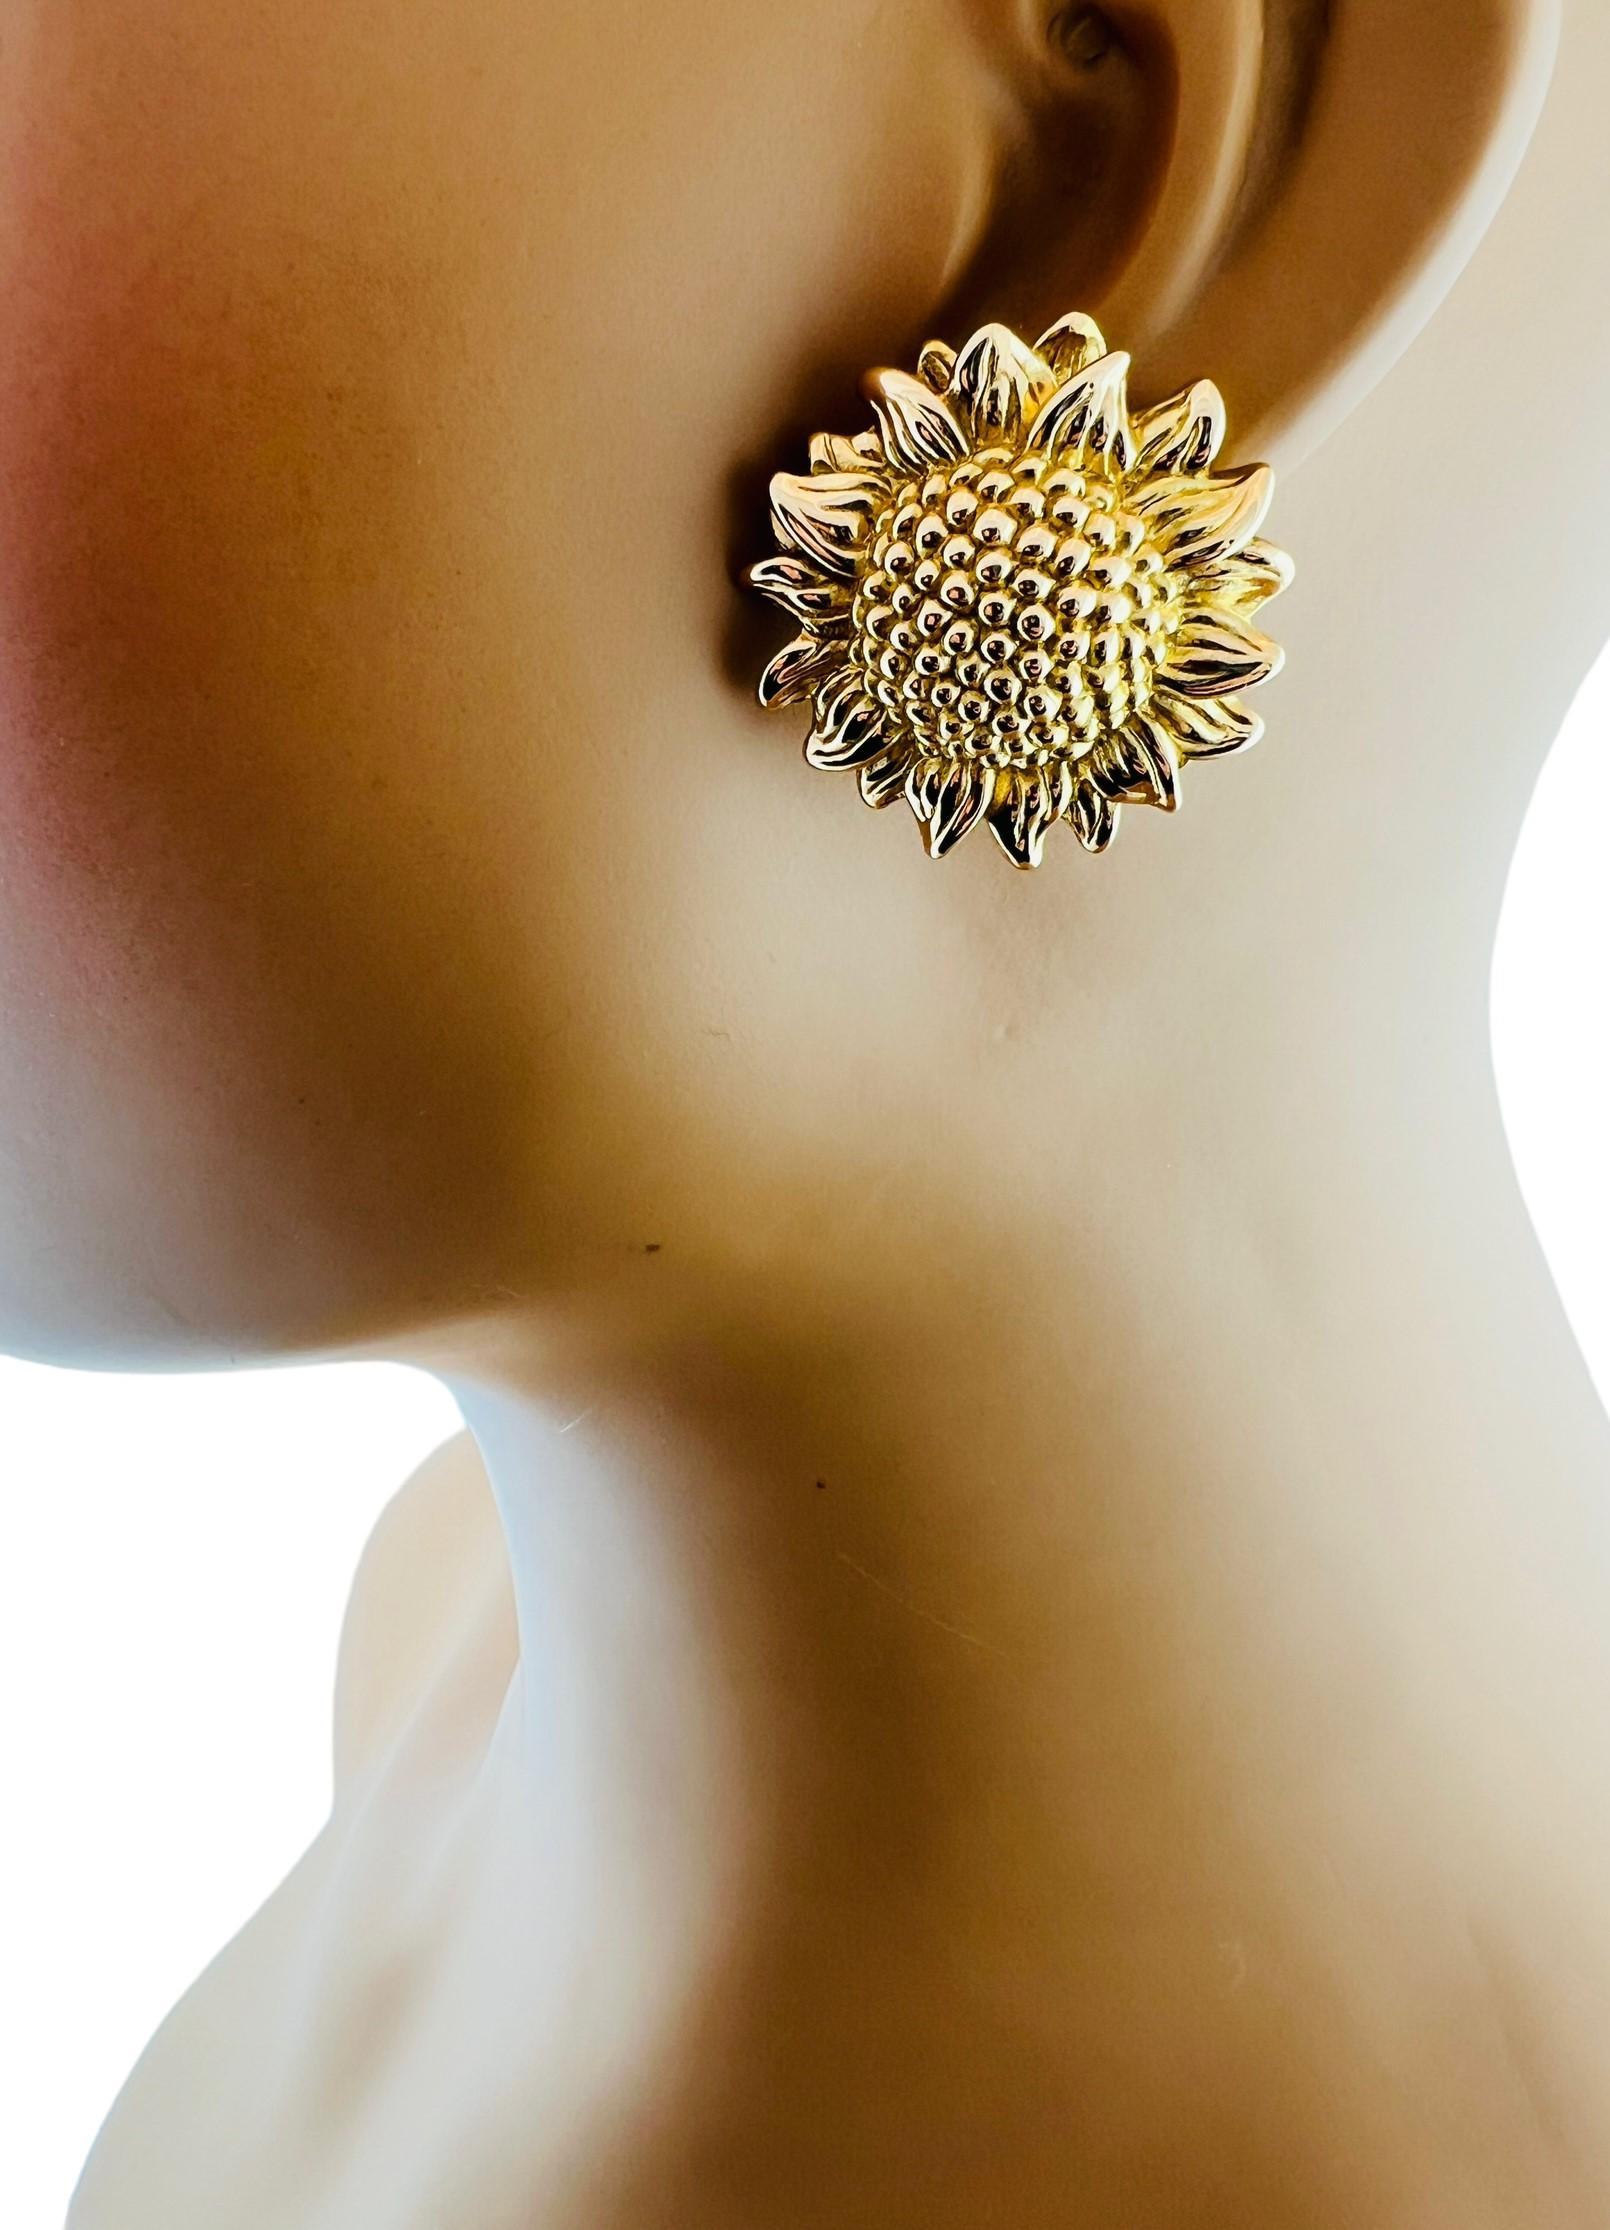 14K Yellow Gold Sunflower Earrings w/ Sterling Silver Backs #15939 2